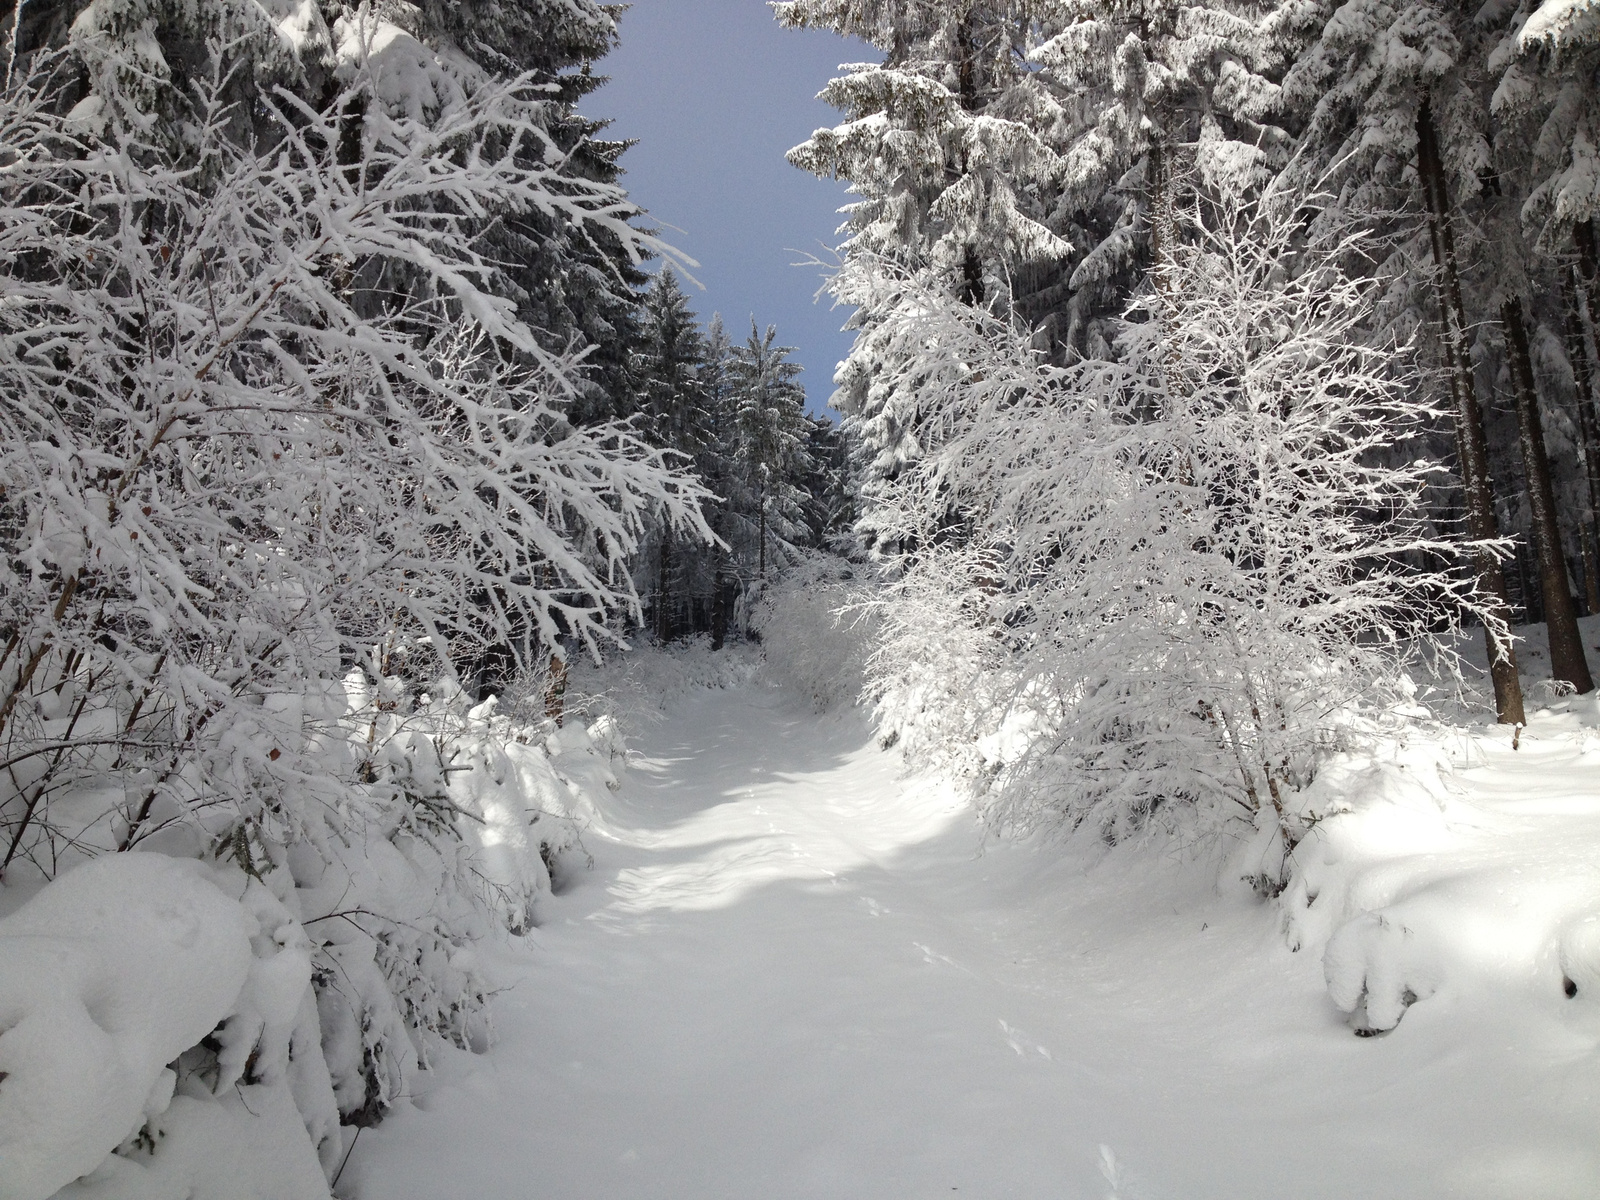 IMG 6054 Csodálatos havas-deres erdő 800 m felett